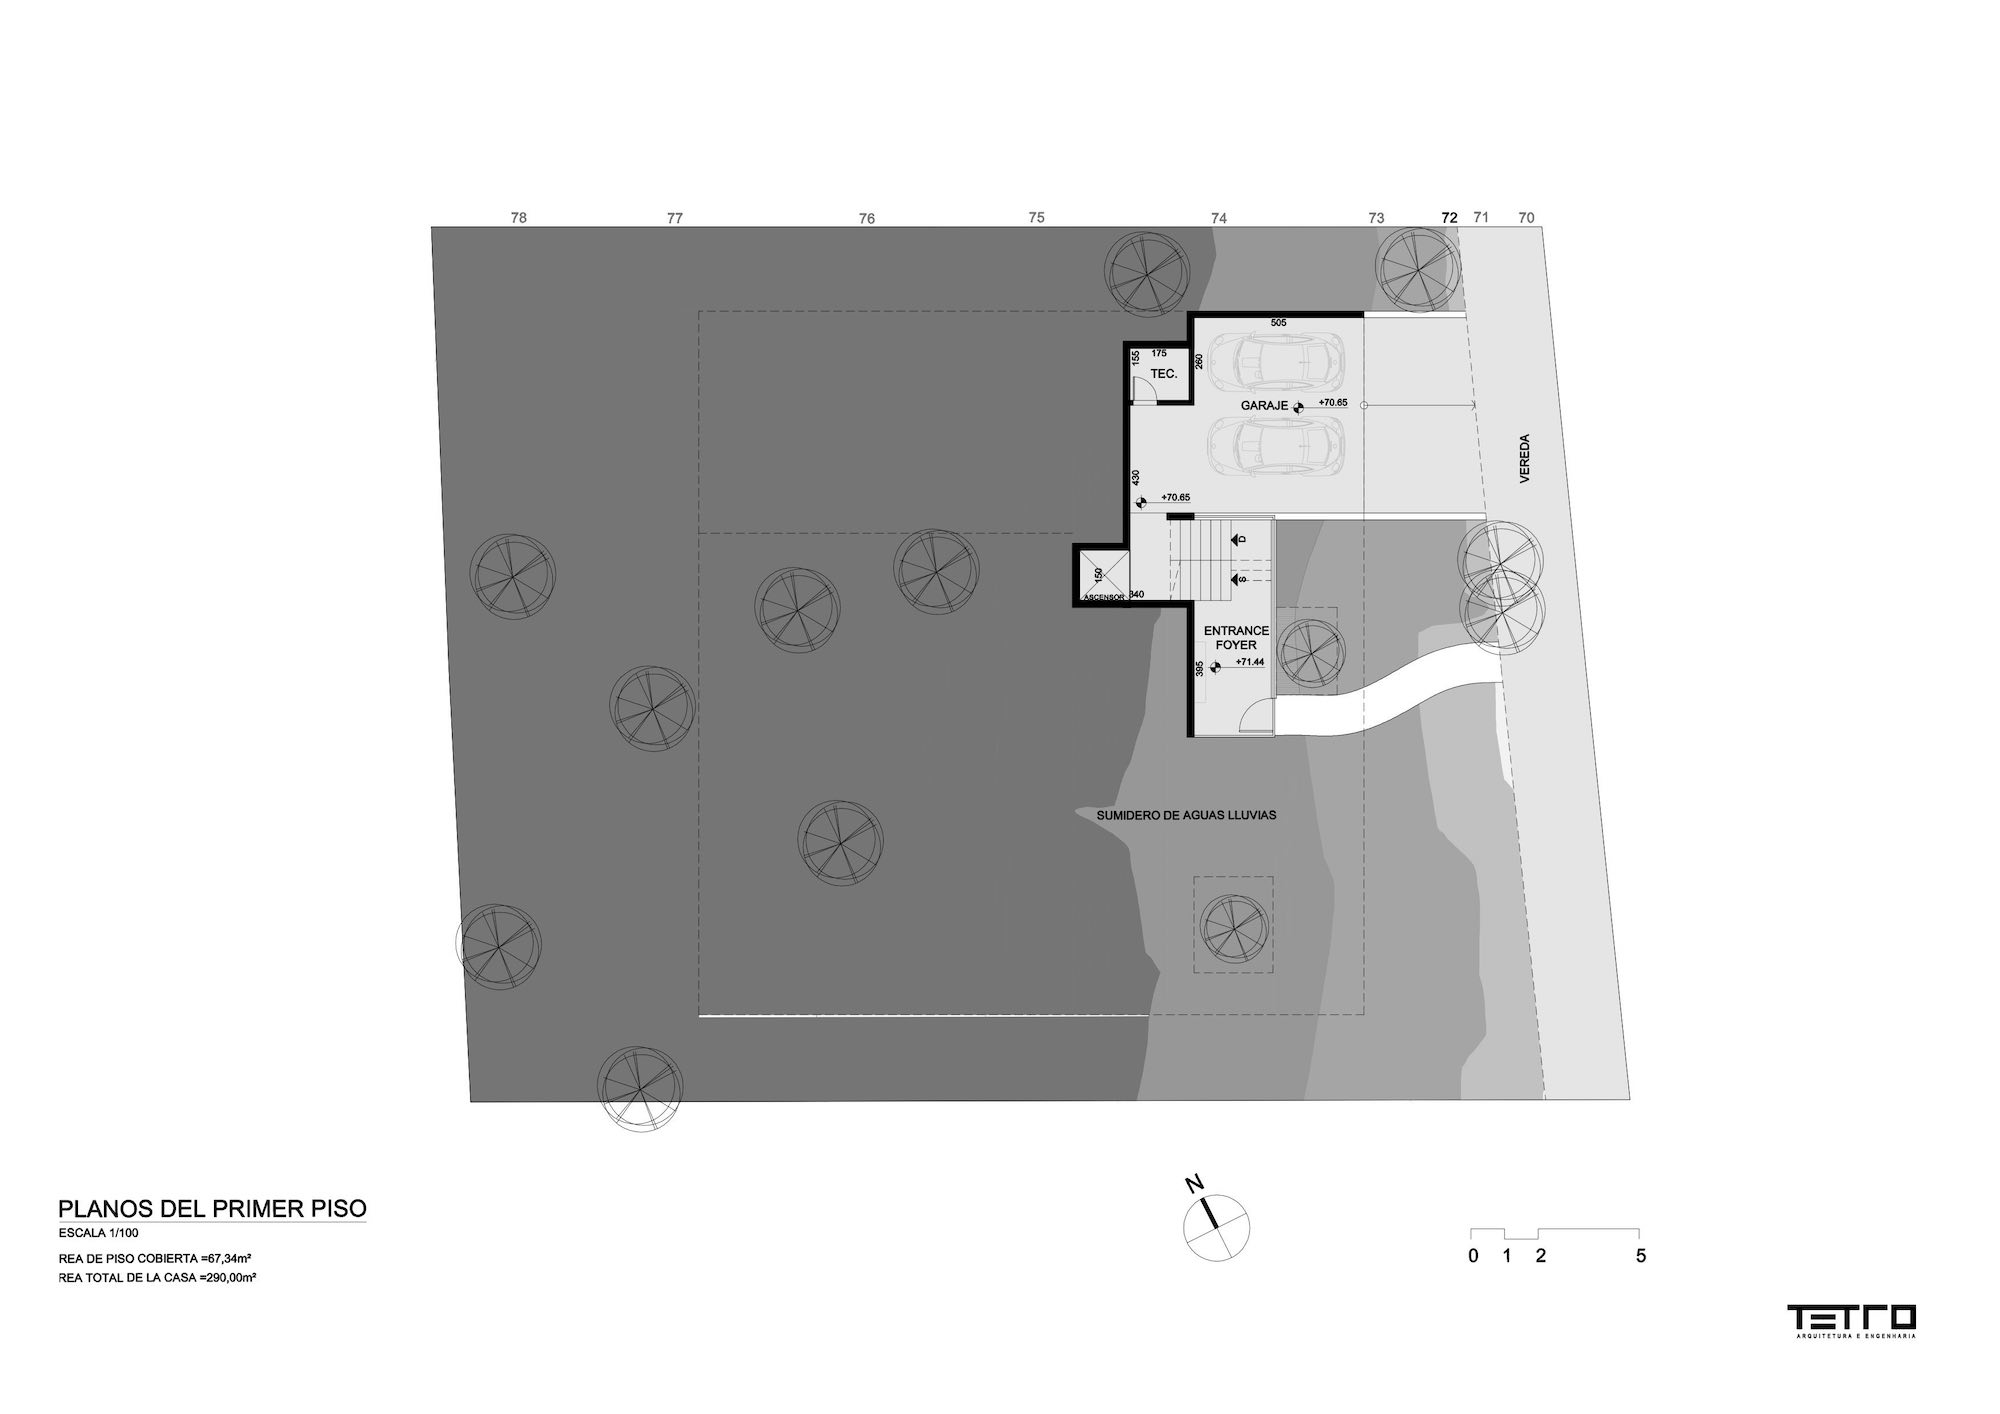 Basement Floor Plan 